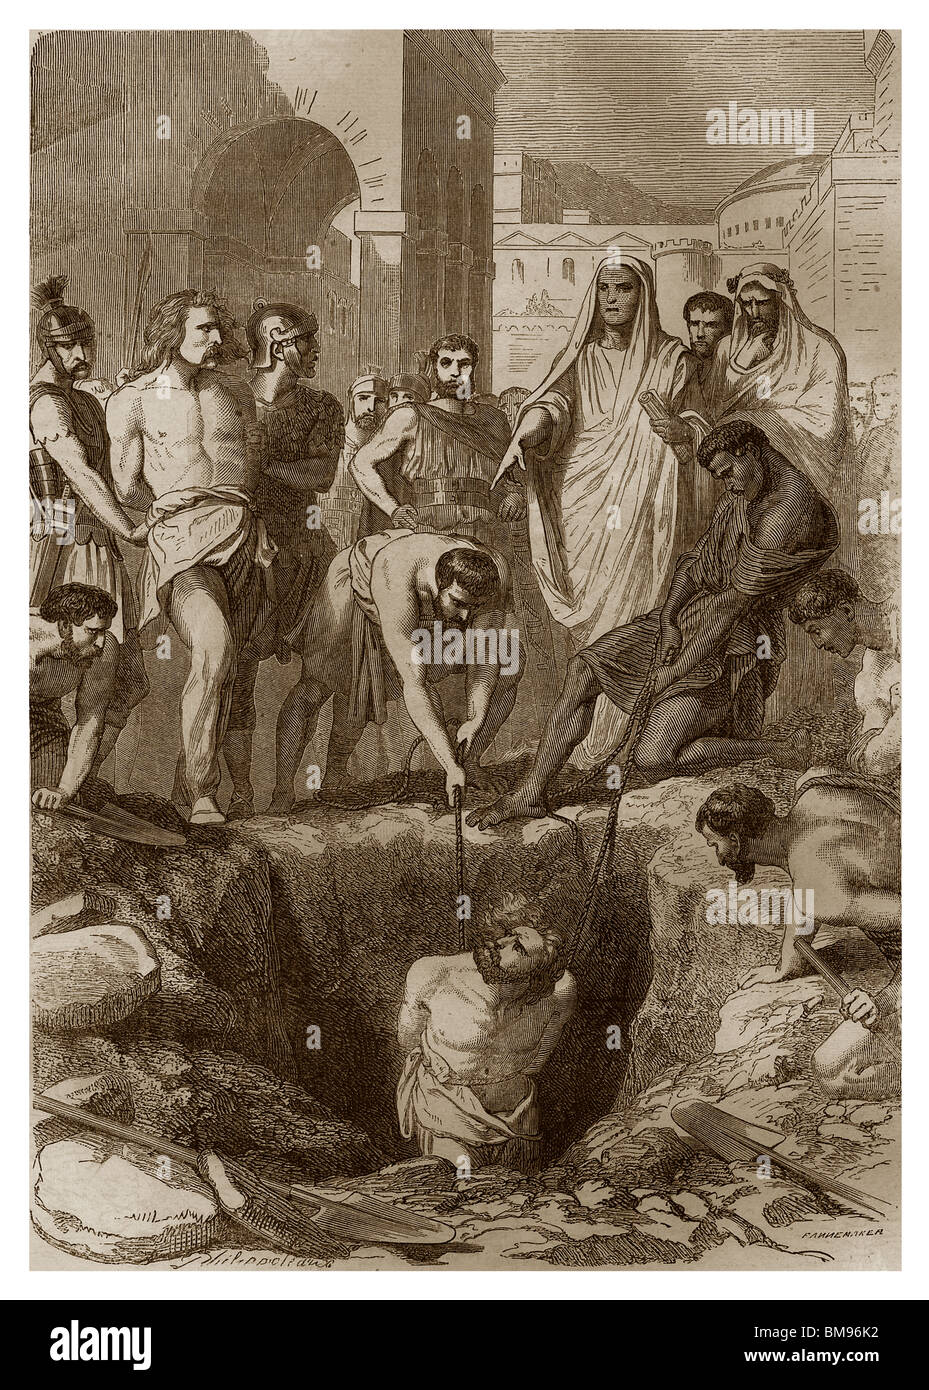 En 232 av. J.-C., les Gaulois enterrés vivants au milieu des taureaux marché. Banque D'Images